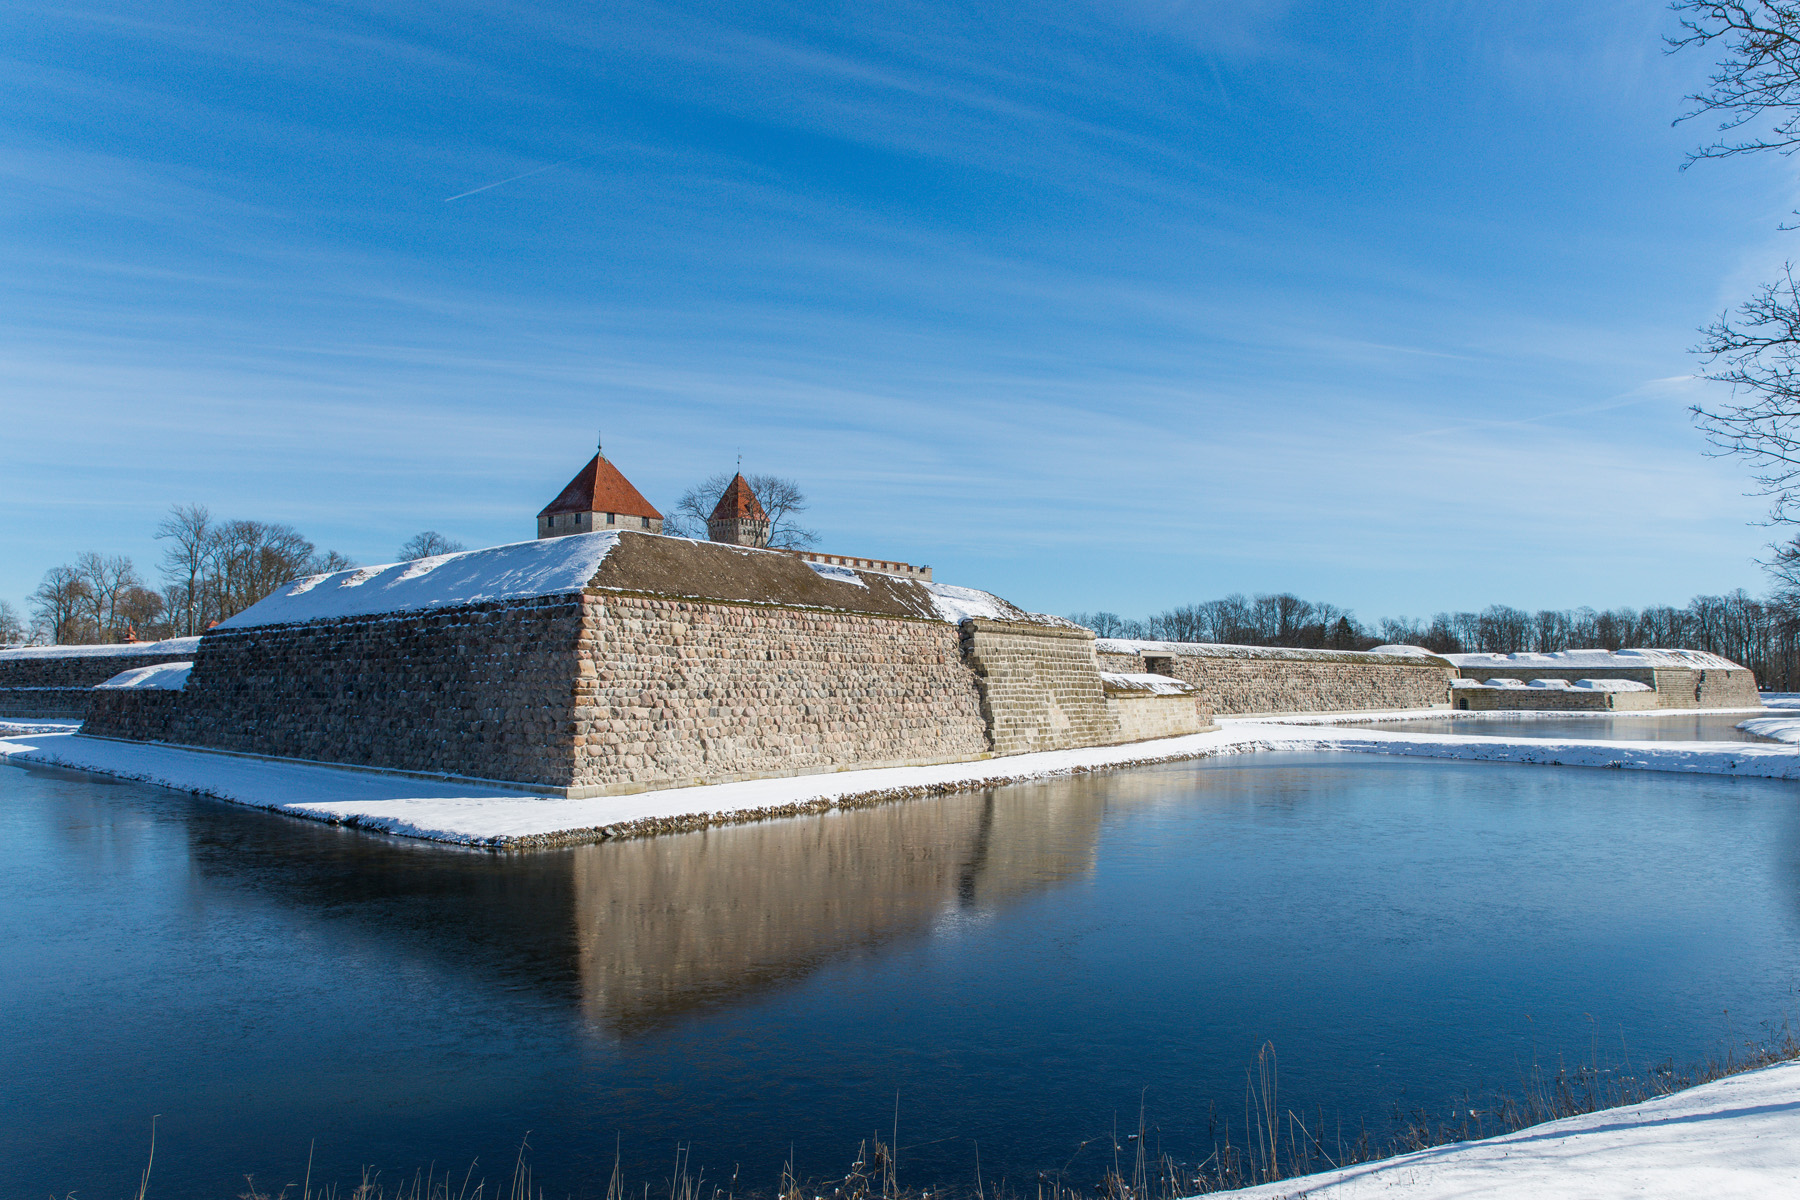 20160320-Saaremaa-574-Kuressaare.jpg - 18.-20. märts 2016. Saaremaa ringreis. Kuressaare loss